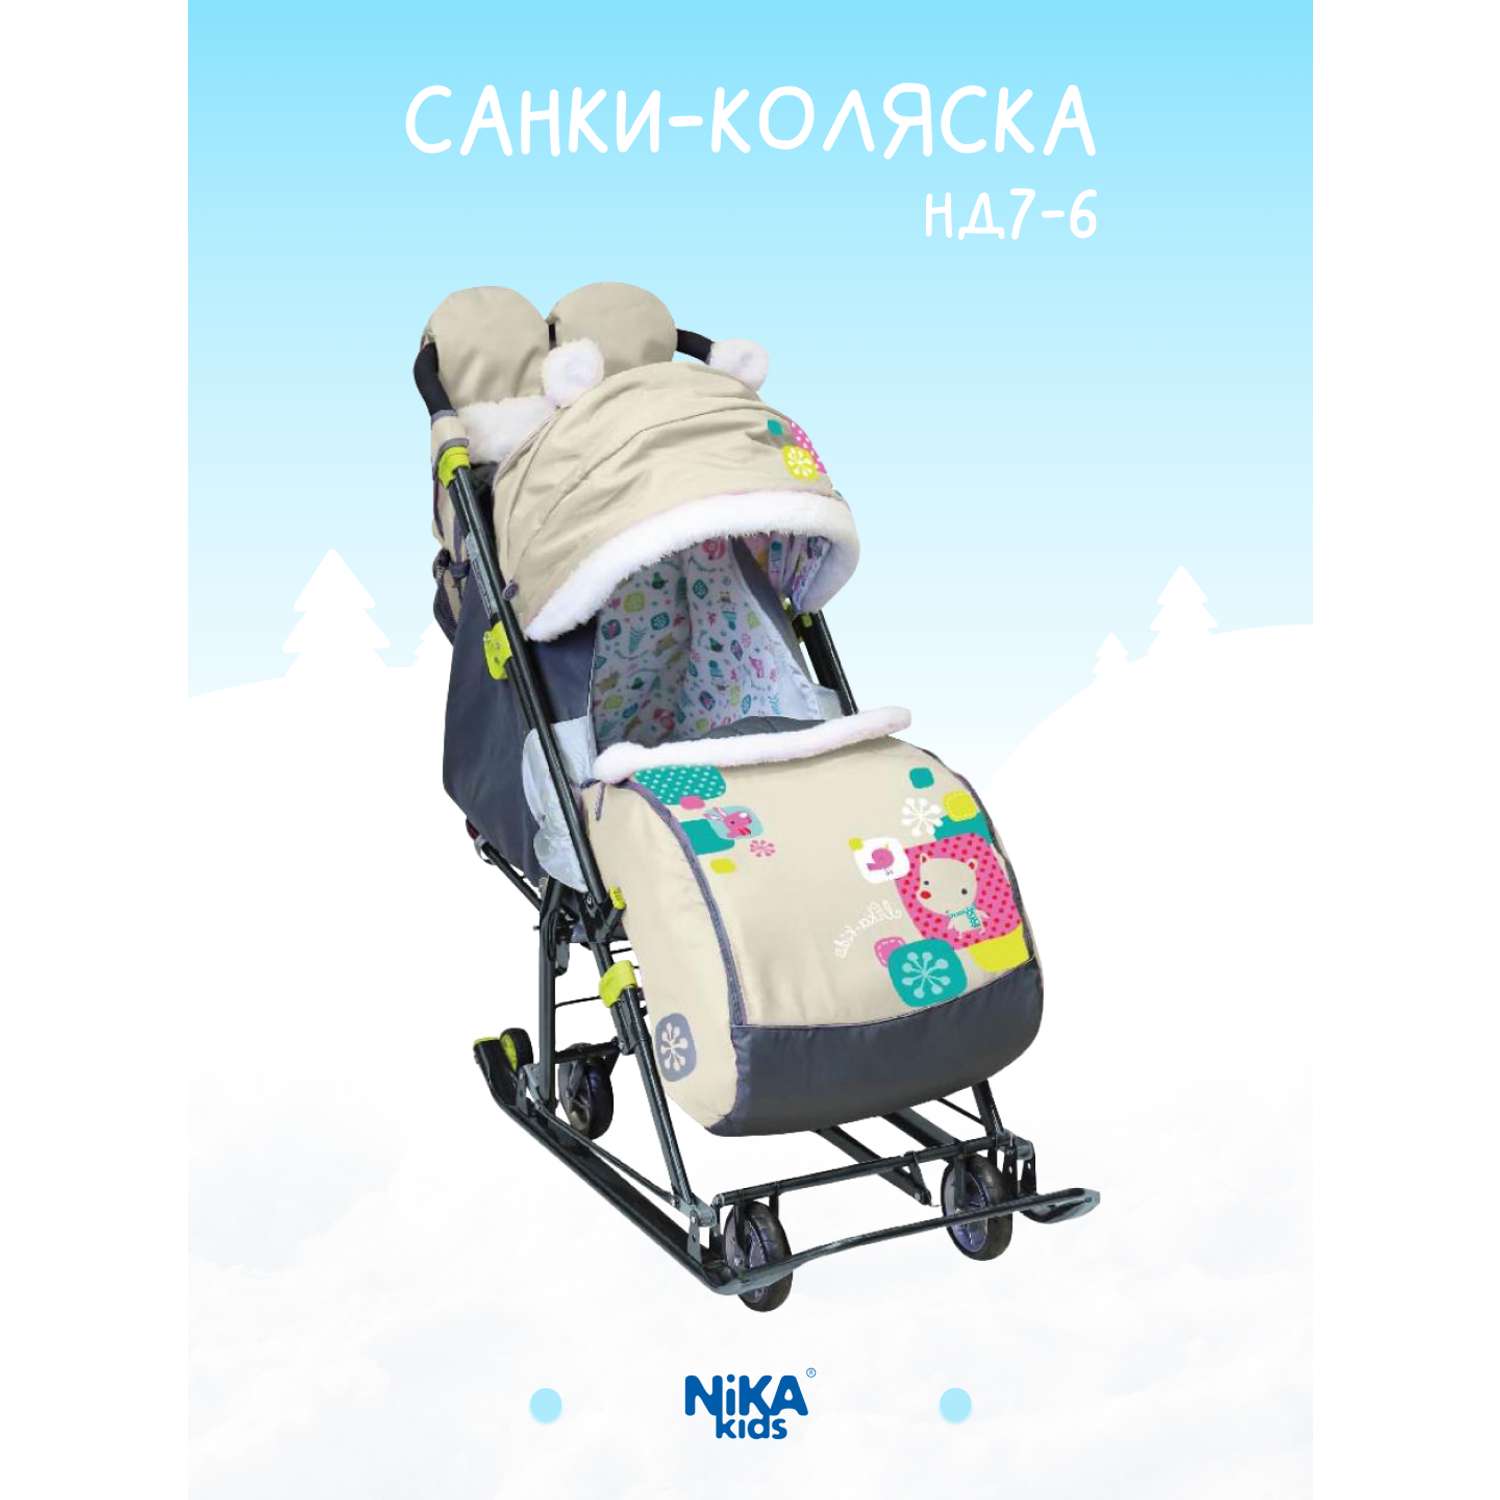 Зимние санки-коляска Nika kids прогулочные для детей - фото 1